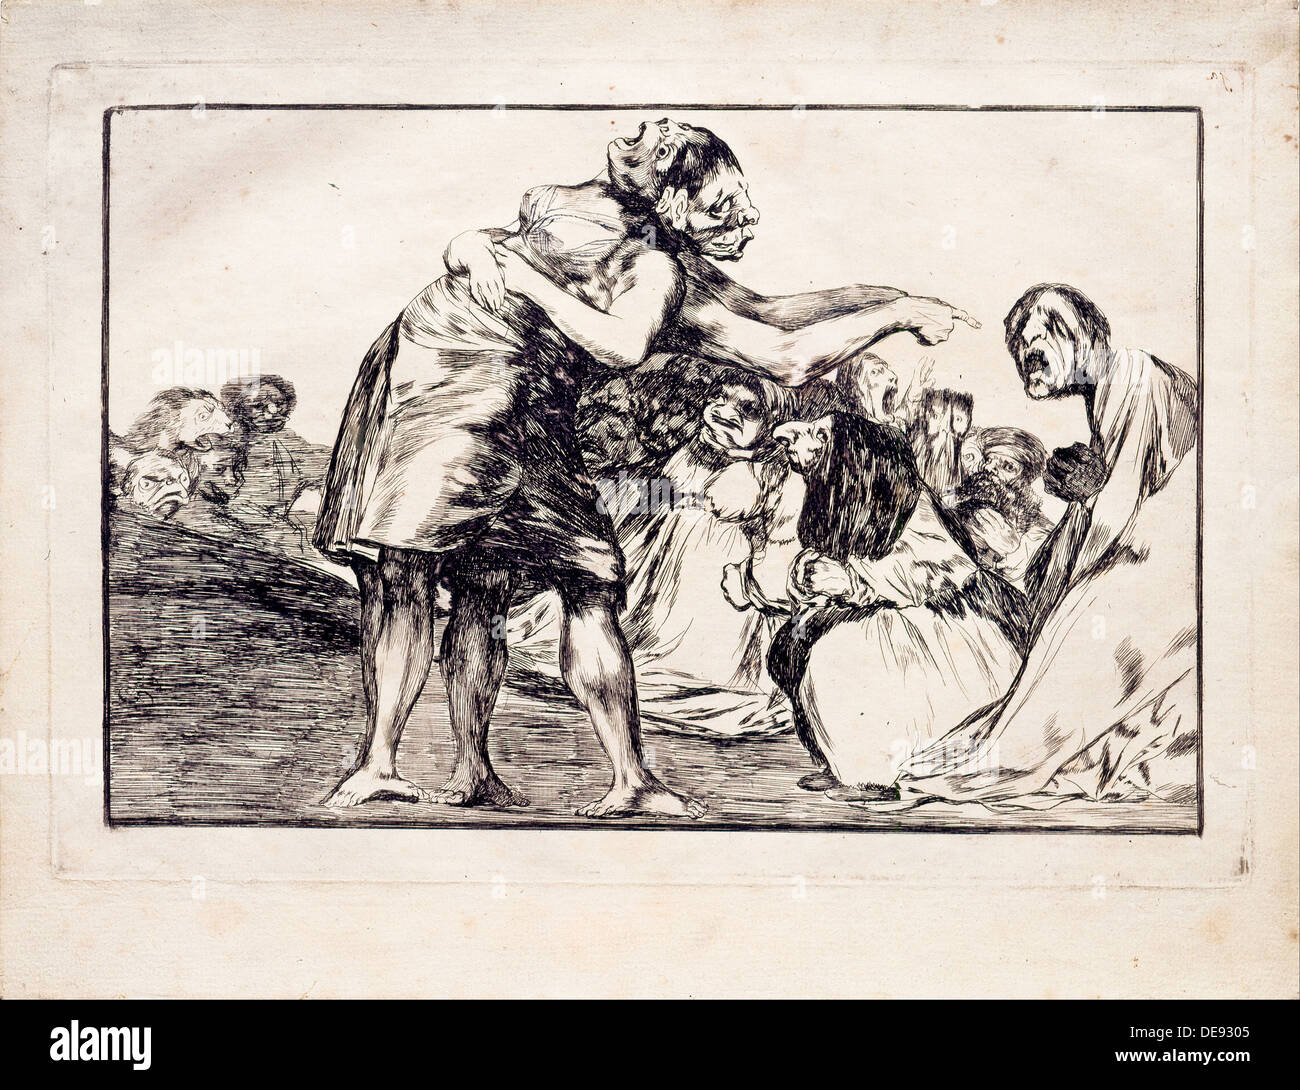 Folie désordonnée (de la série Los disparates (Follies), 1815-1819. Artiste : Goya, Francisco de (1746-1828) Banque D'Images